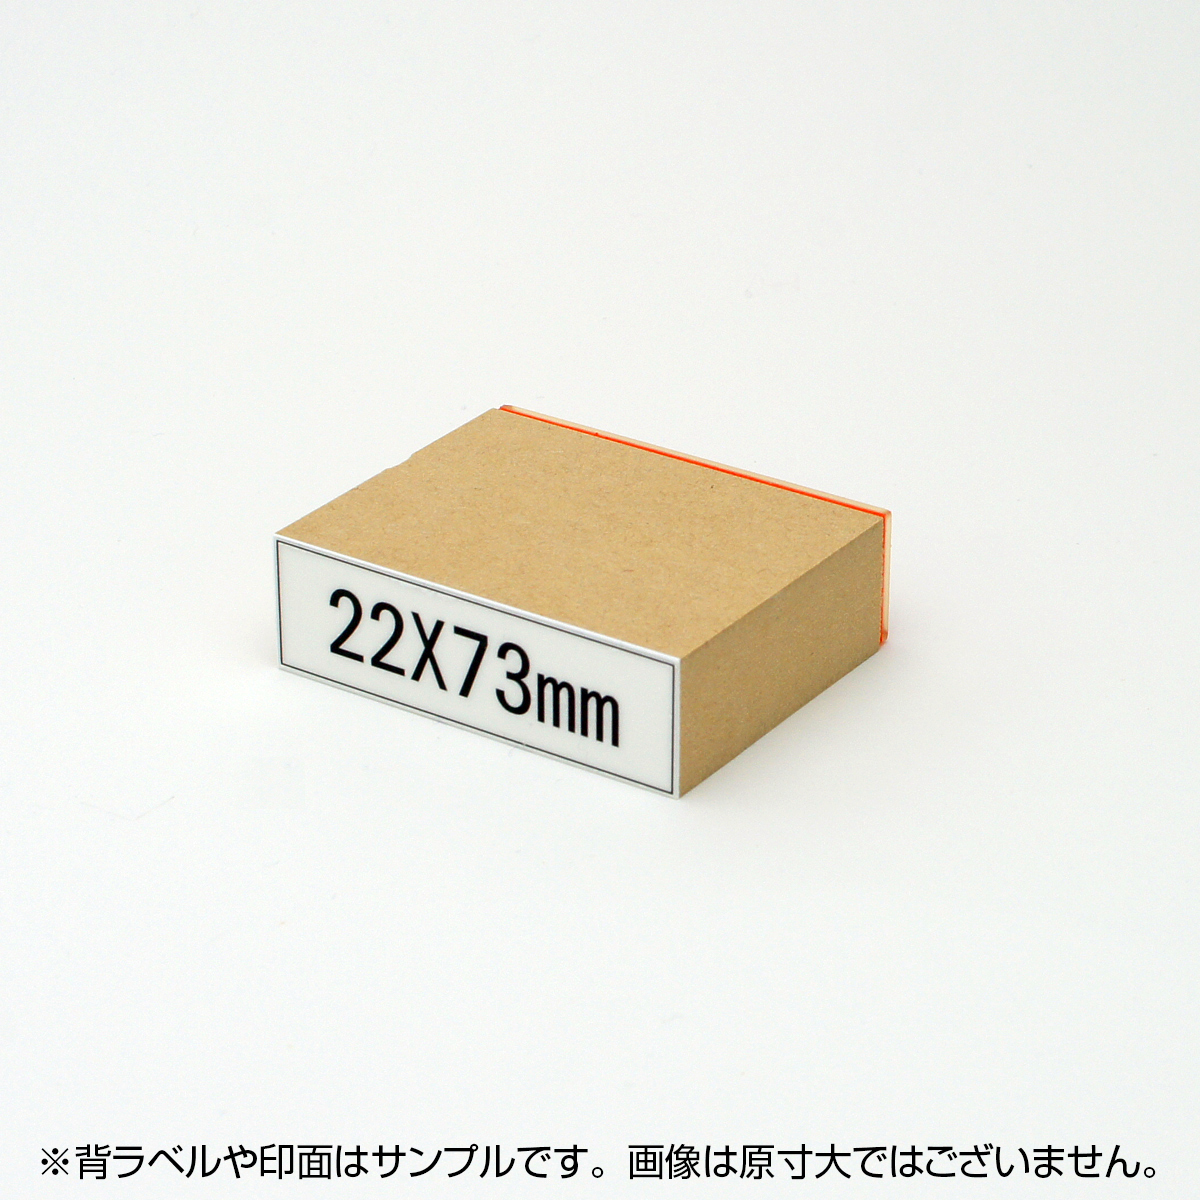 一般用途[感光樹脂]  テキスト入稿 木台ゴム印 22×73mm